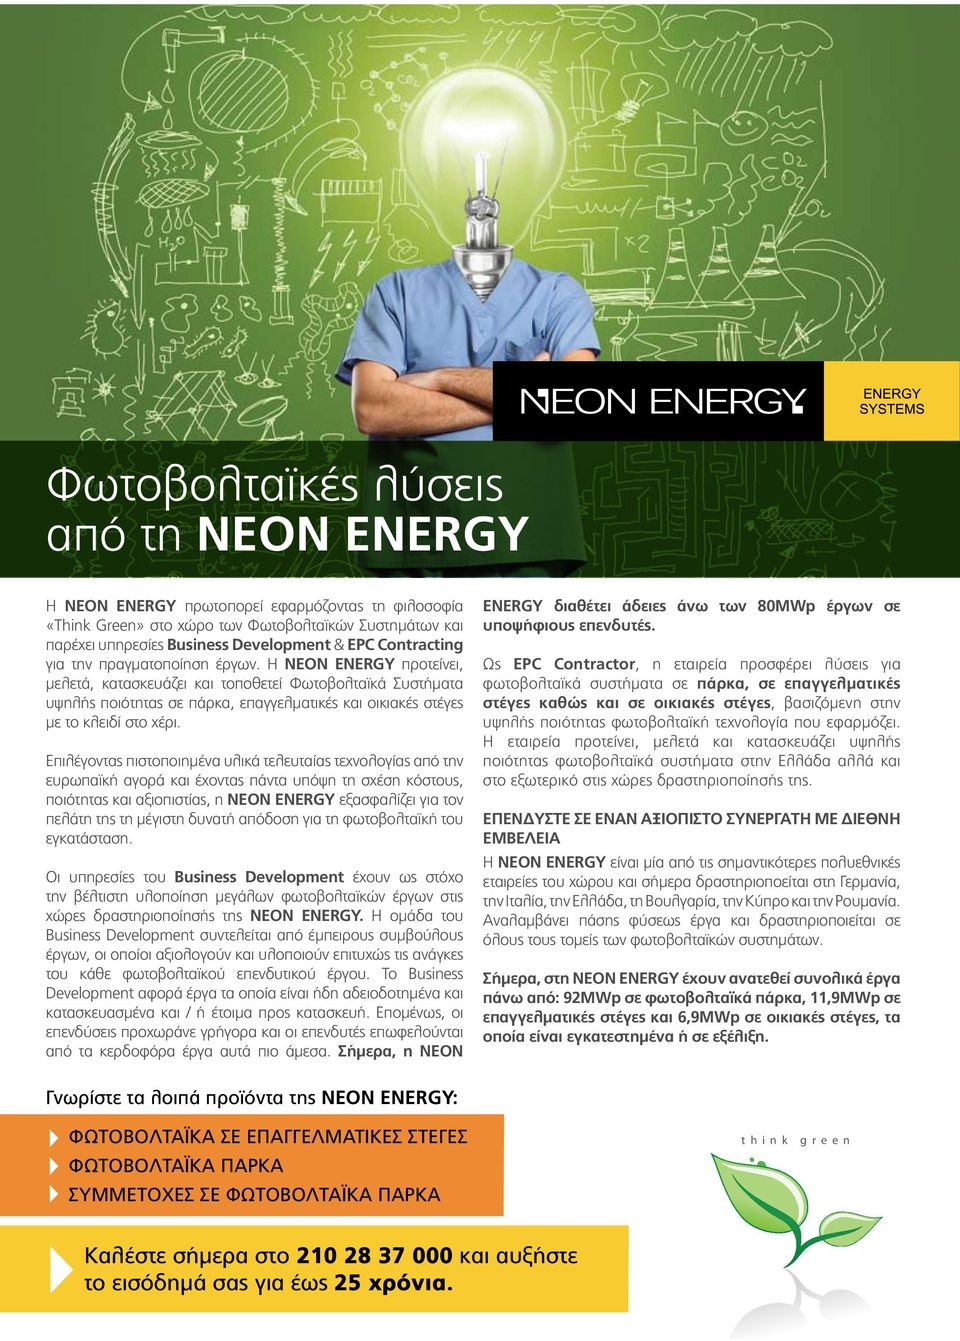 Η NEON ENERGY προτείνει, μελετά, κατασκευάζει και τοποθετεί Φωτοβολταϊκά Συστήματα υψηλής ποιότητας σε πάρκα, επαγγελματικές και οικιακές στέγες με το κλειδί στο χέρι.